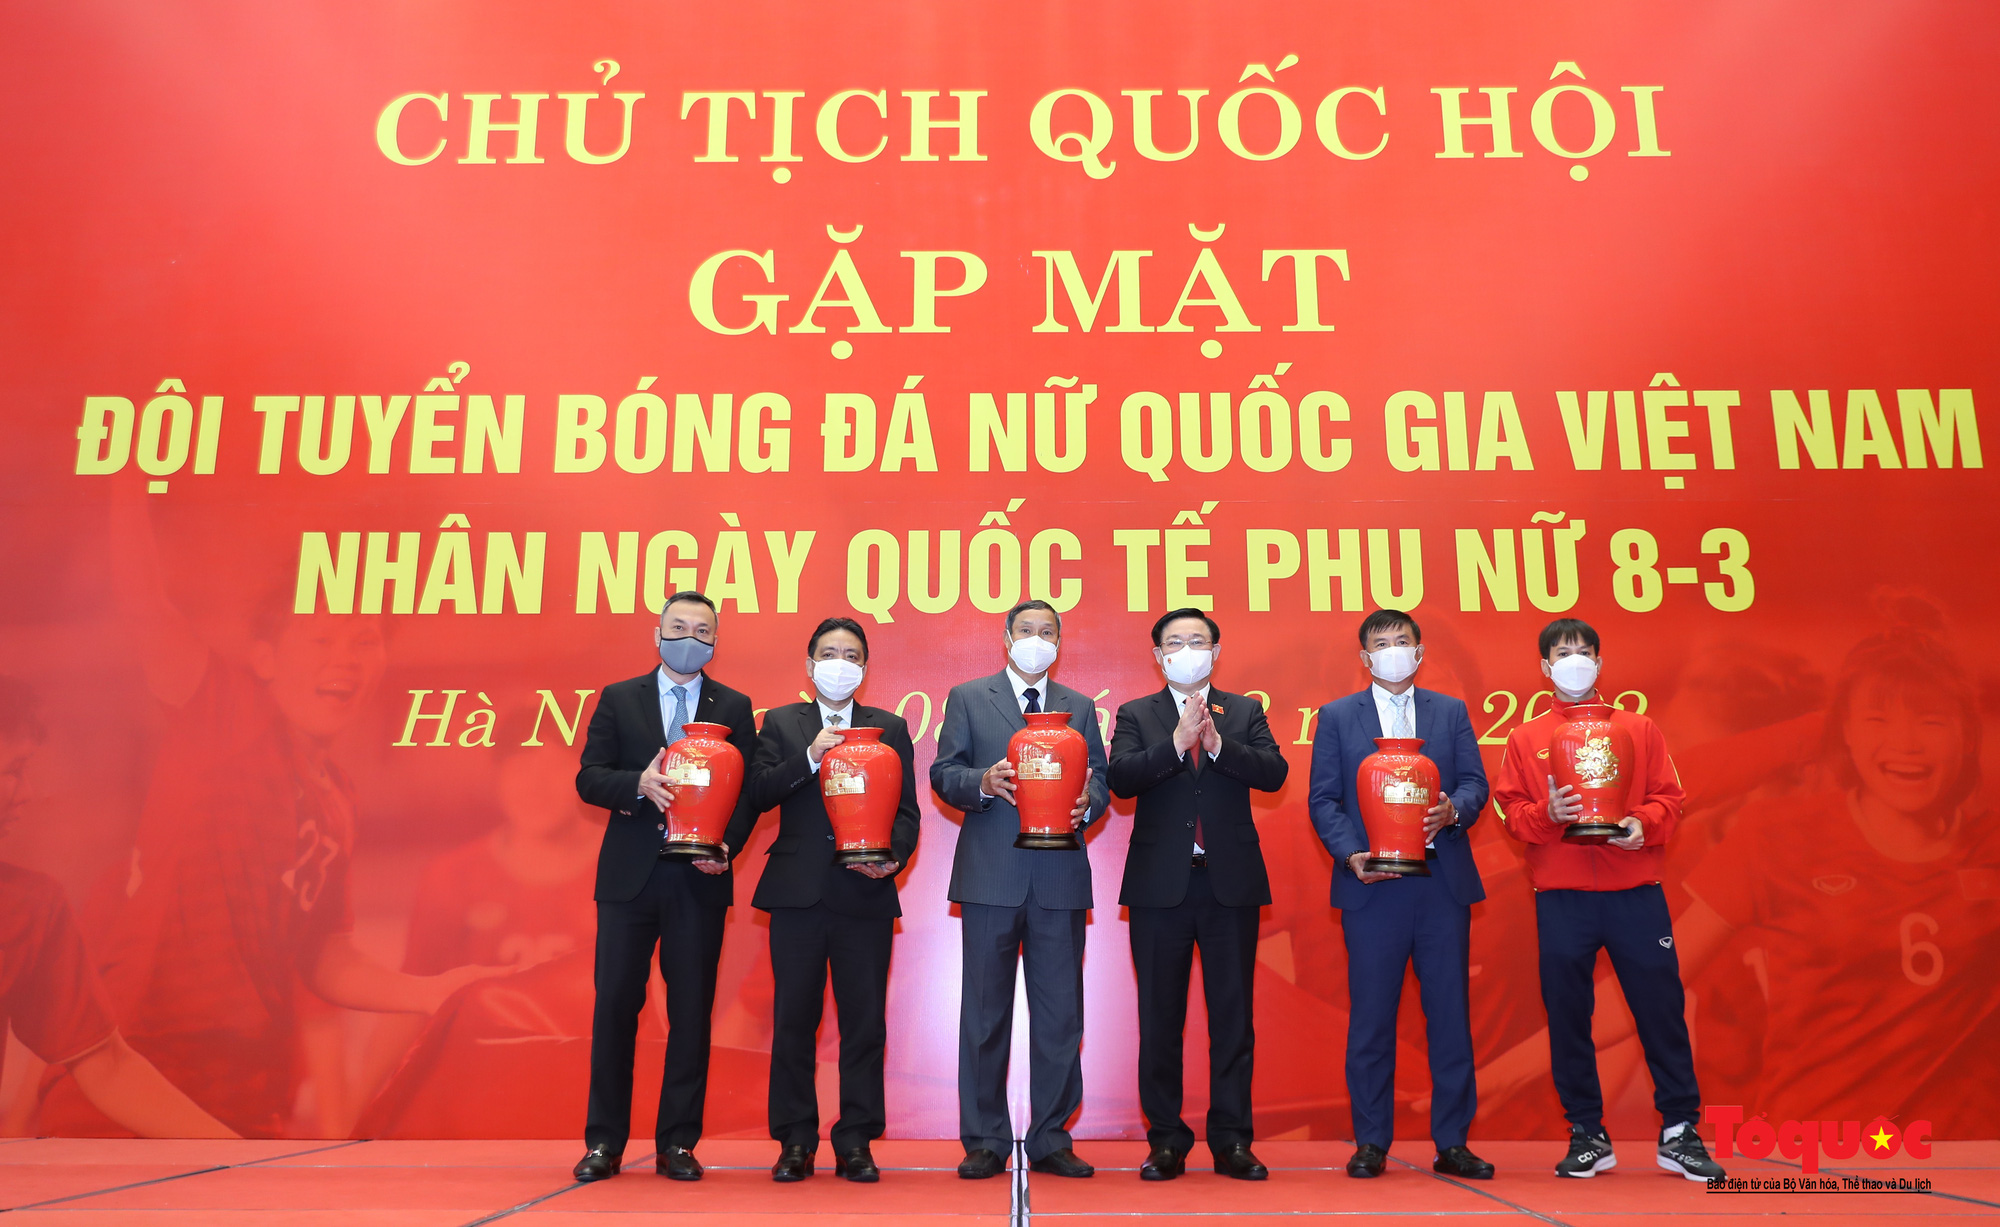 Chủ tịch Quốc hội Vương Đình Huệ gặp mặt Đội tuyển Bóng đá nữ Việt Nam - Ảnh 12.